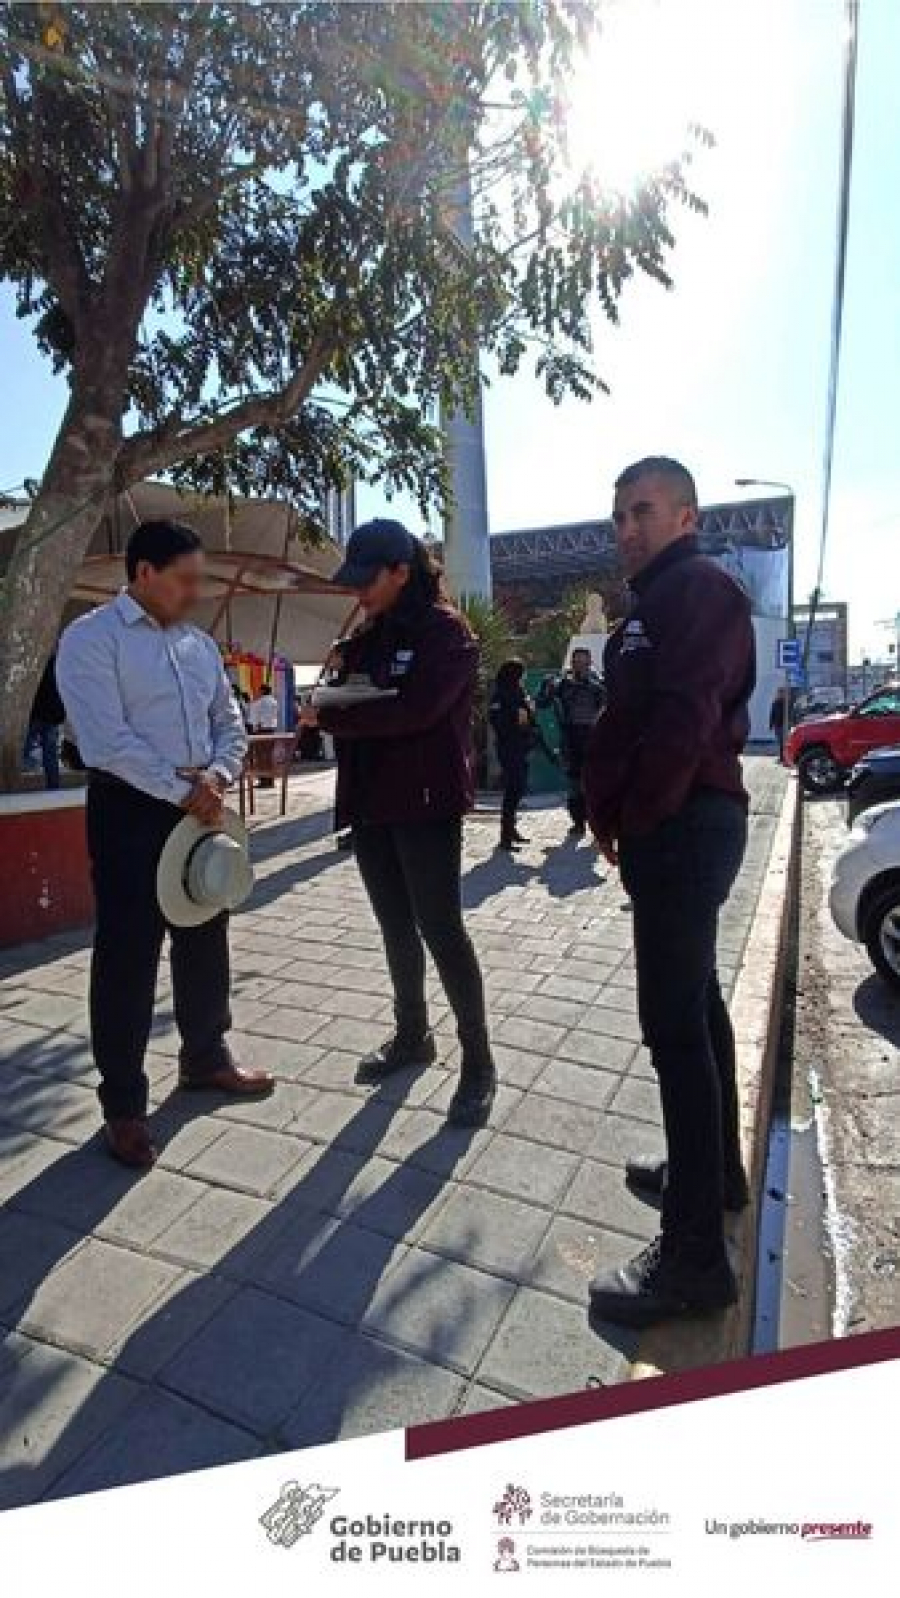 En coordinación con Fiscalía General del Estado de Puebla, Guardia Nacional y  Secretaría de Seguridad Pública realizamos Acciones de Búsqueda de Personas Desaparecidas en el municipio de Huixcolotla, Puebla.